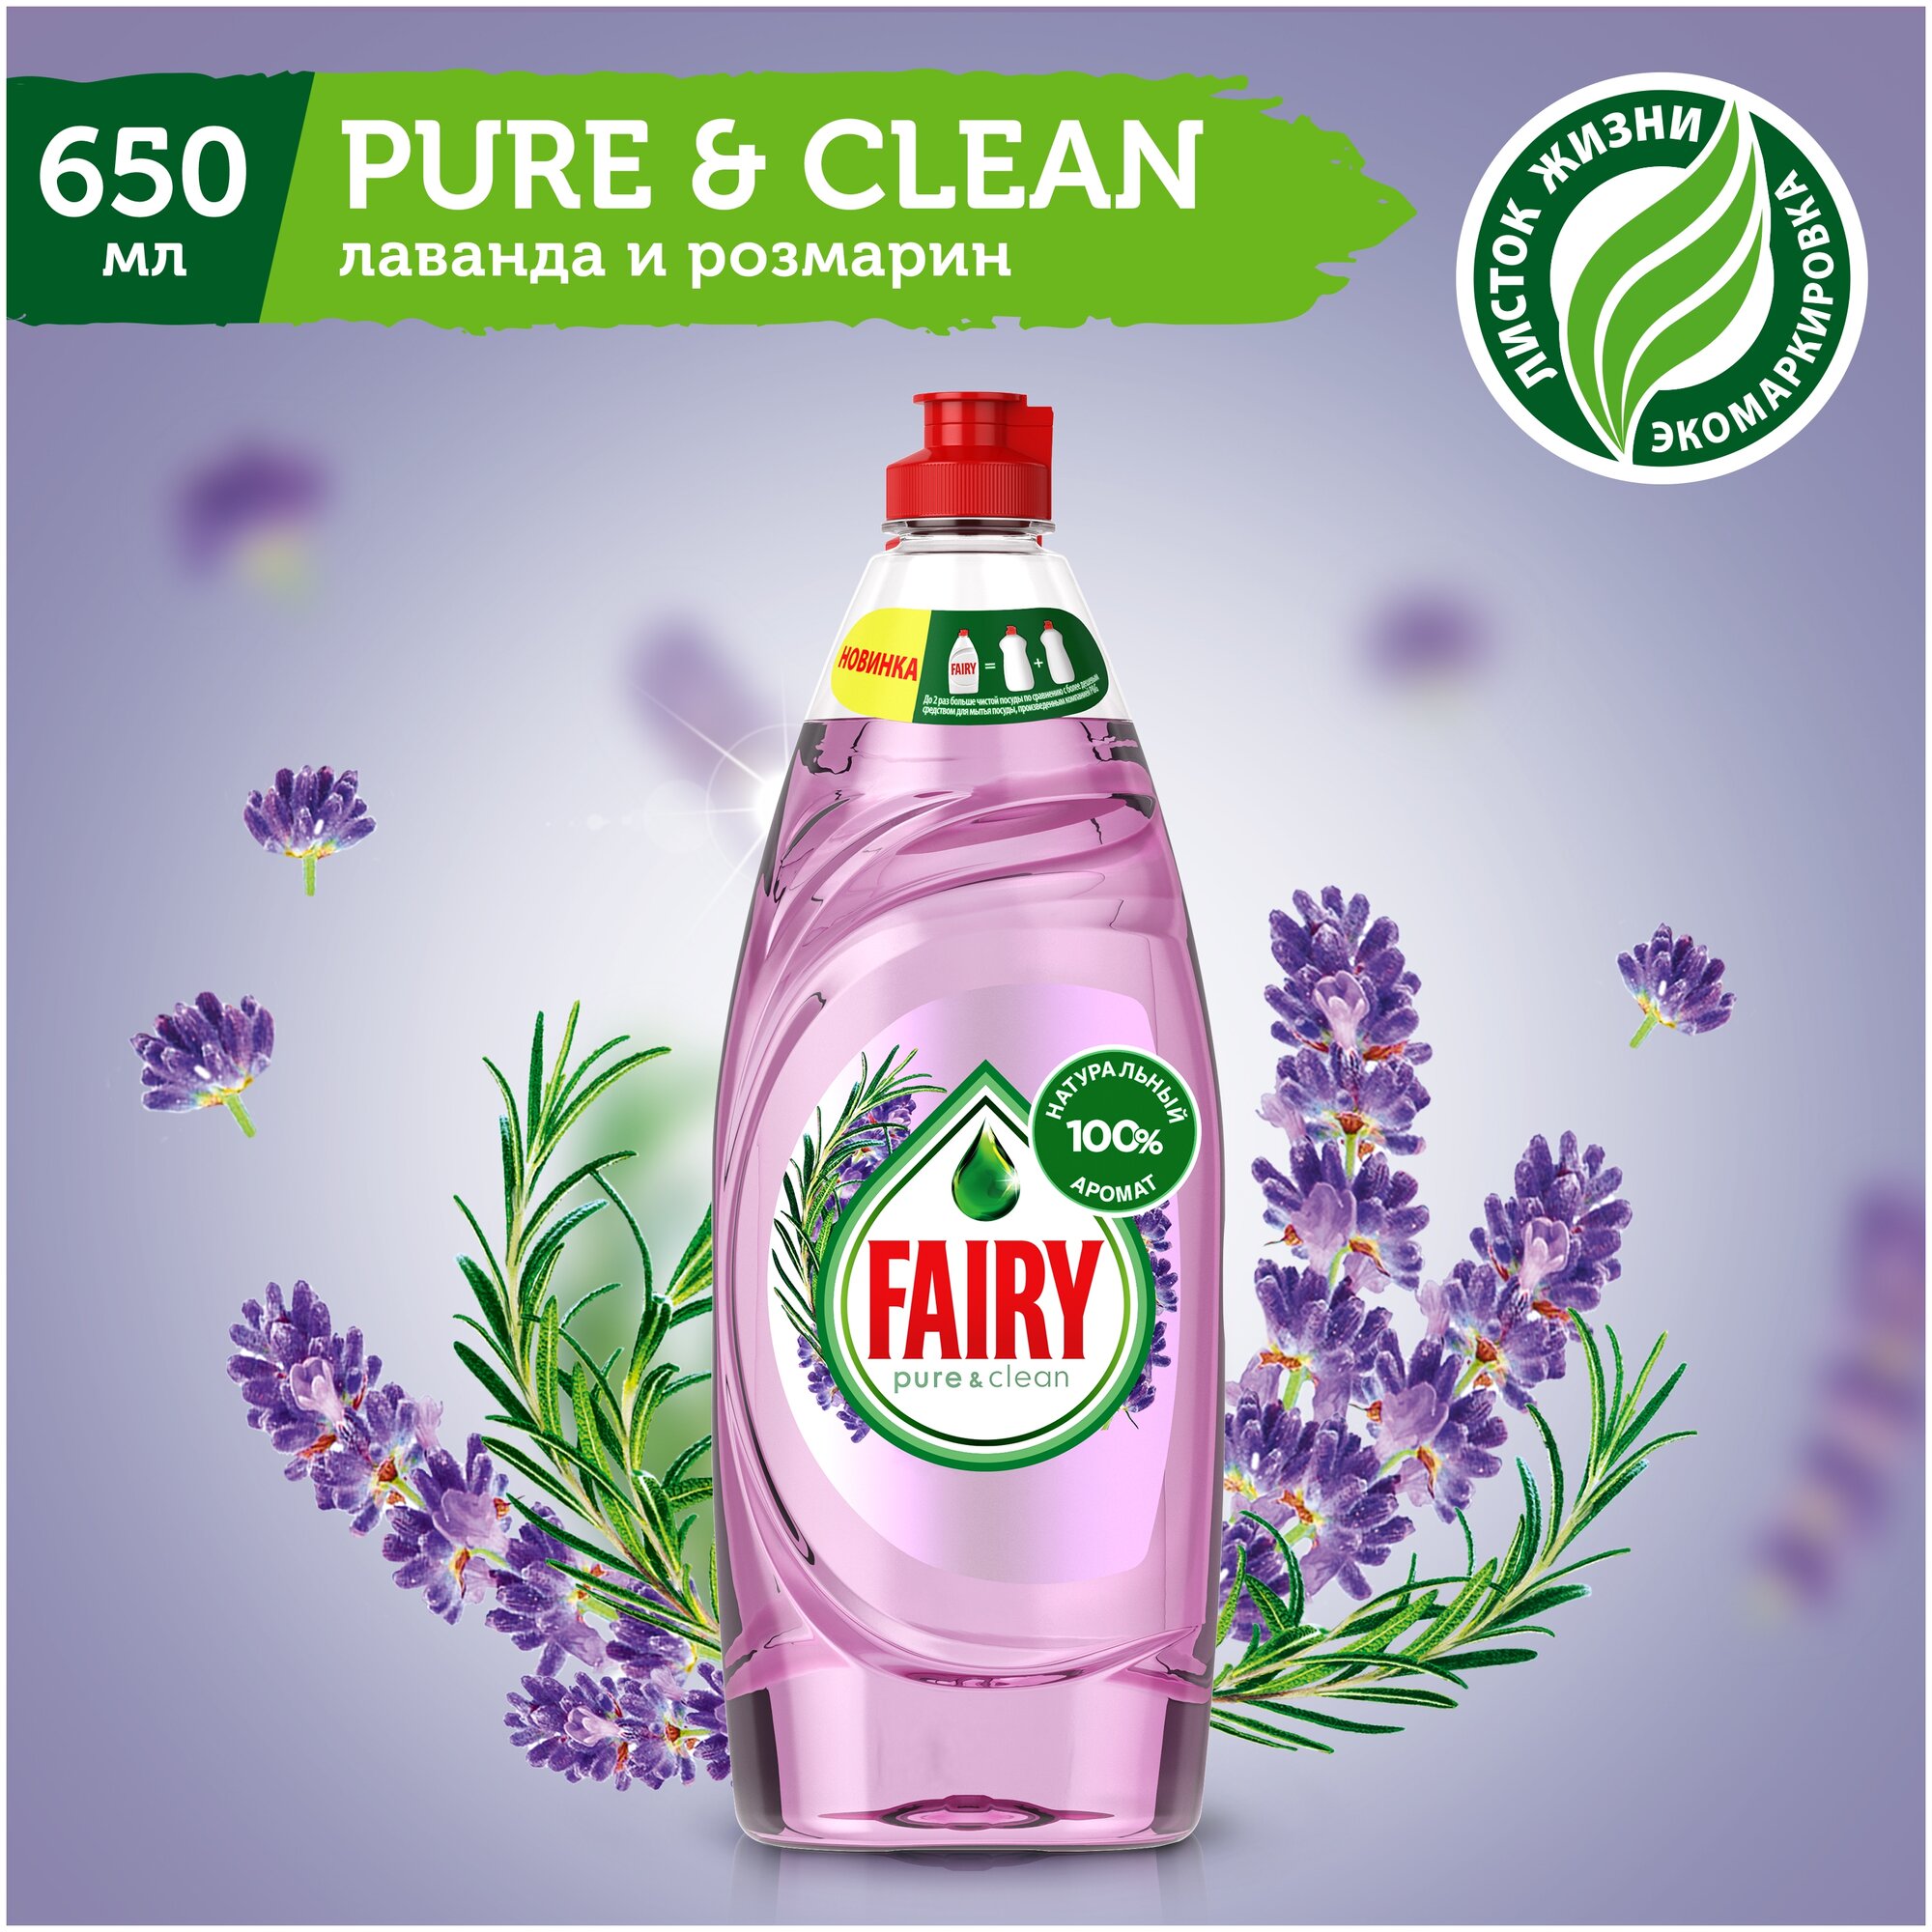 Fairy     Pure & lean   , 0.65 